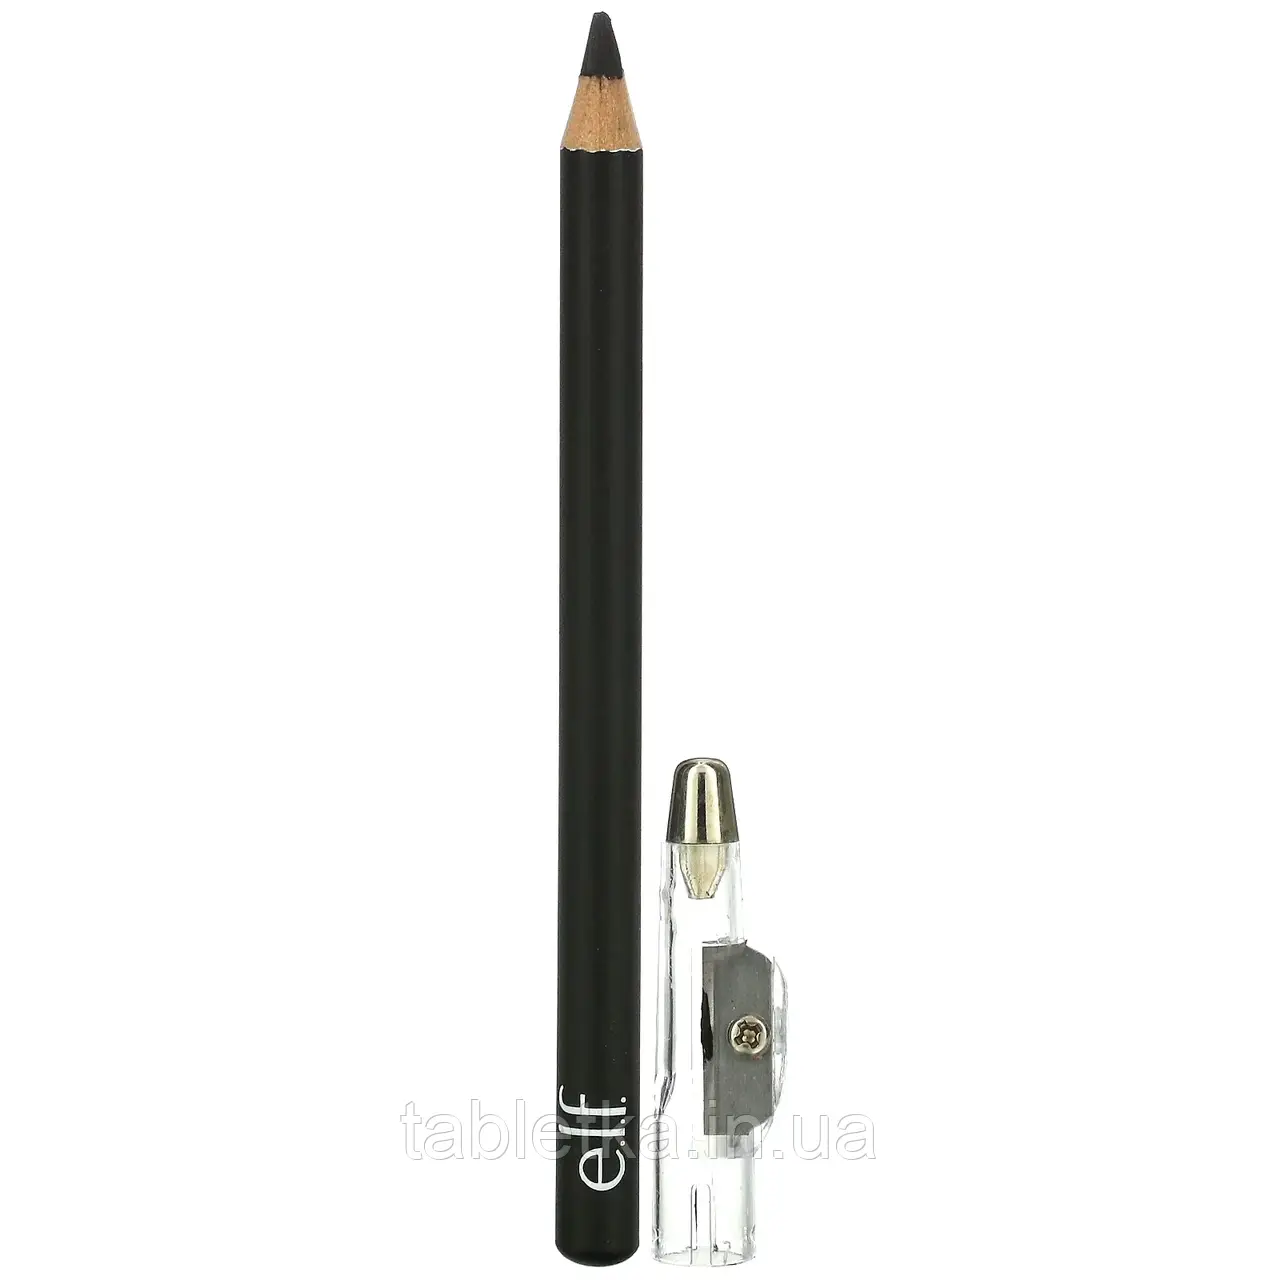 E.L.F., Олівець для підводки Satin Eyeliner Pencil, чорний, 0,03 унції (0,85 г)